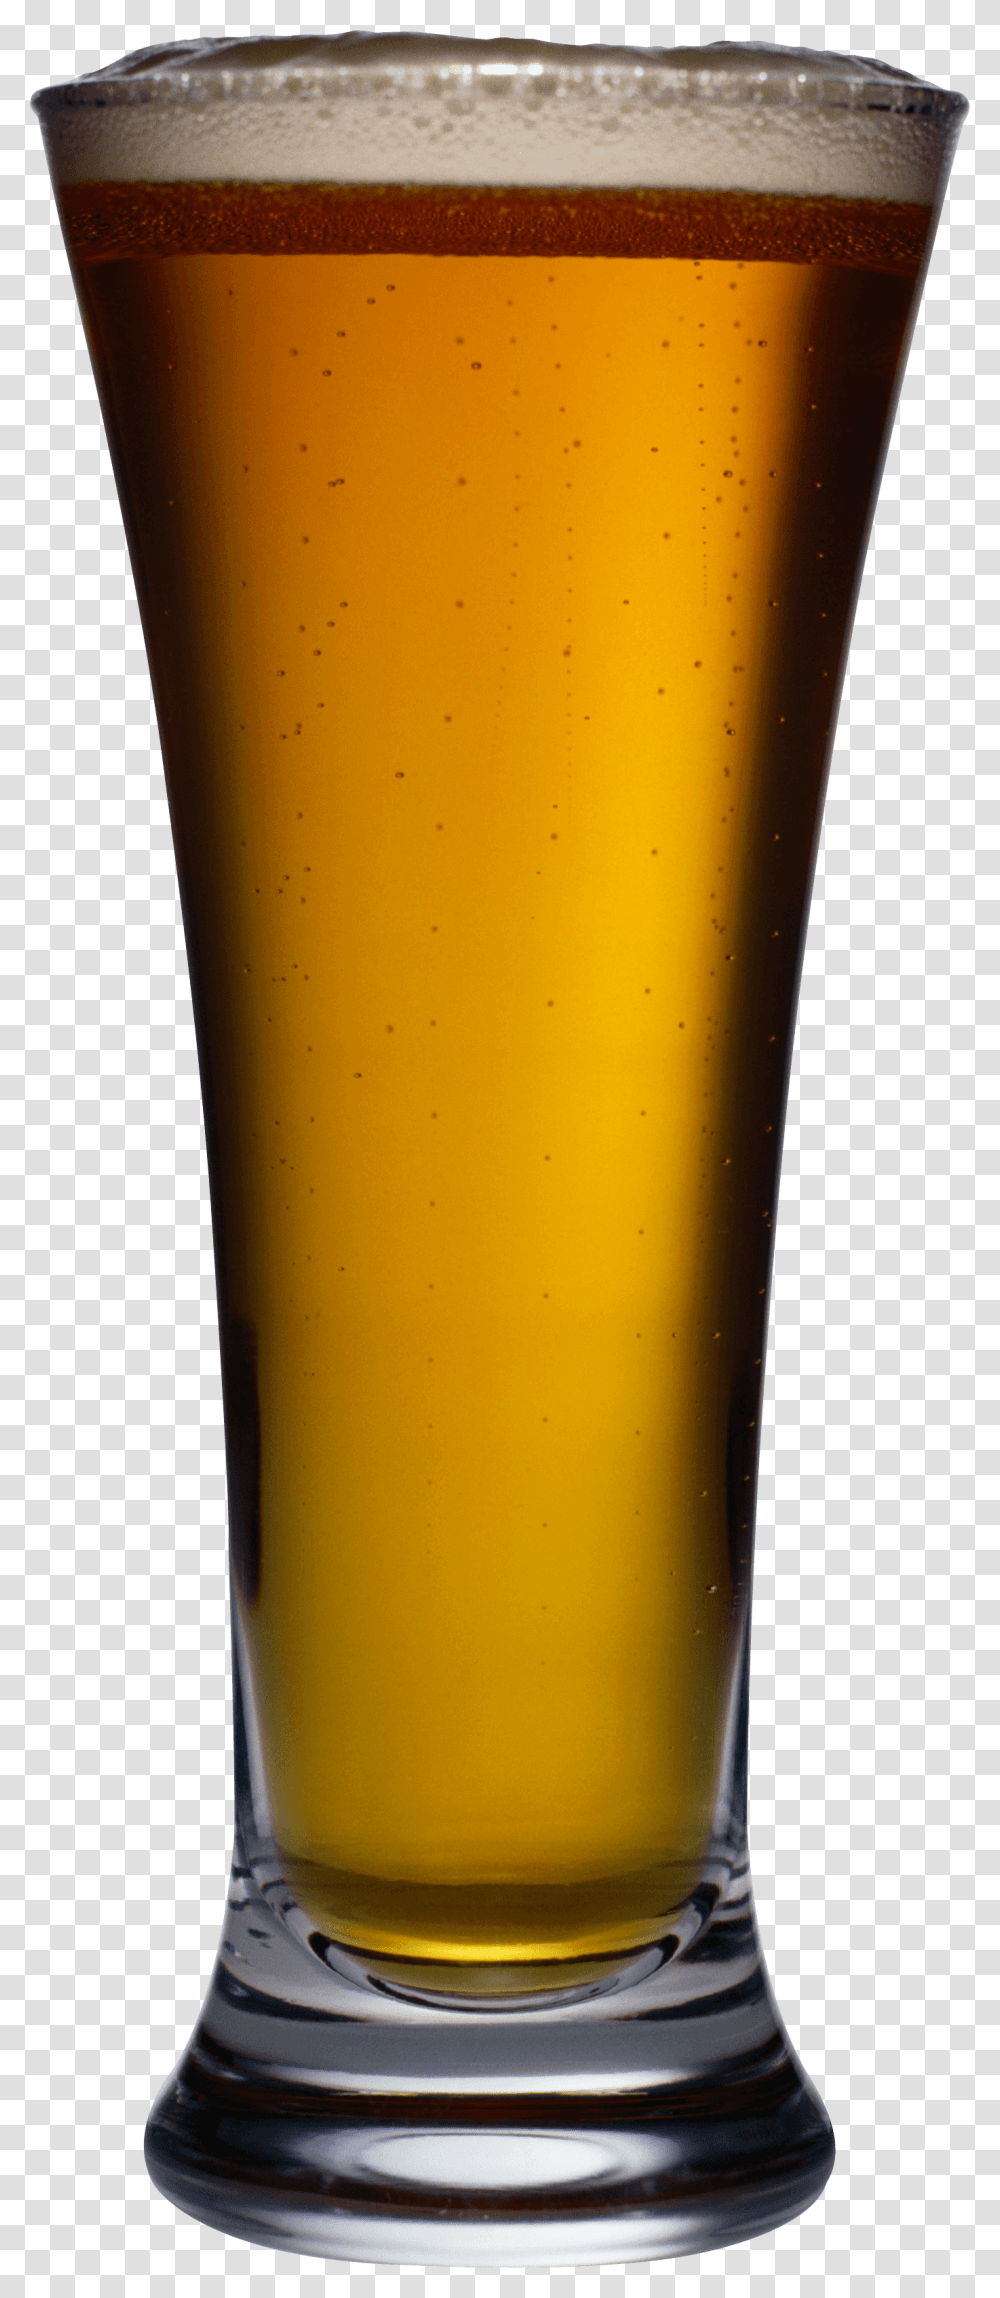 Download Goblet Beer Image Hq Image Freepngimg, Glass, Beer Glass, Alcohol, Beverage Transparent Png